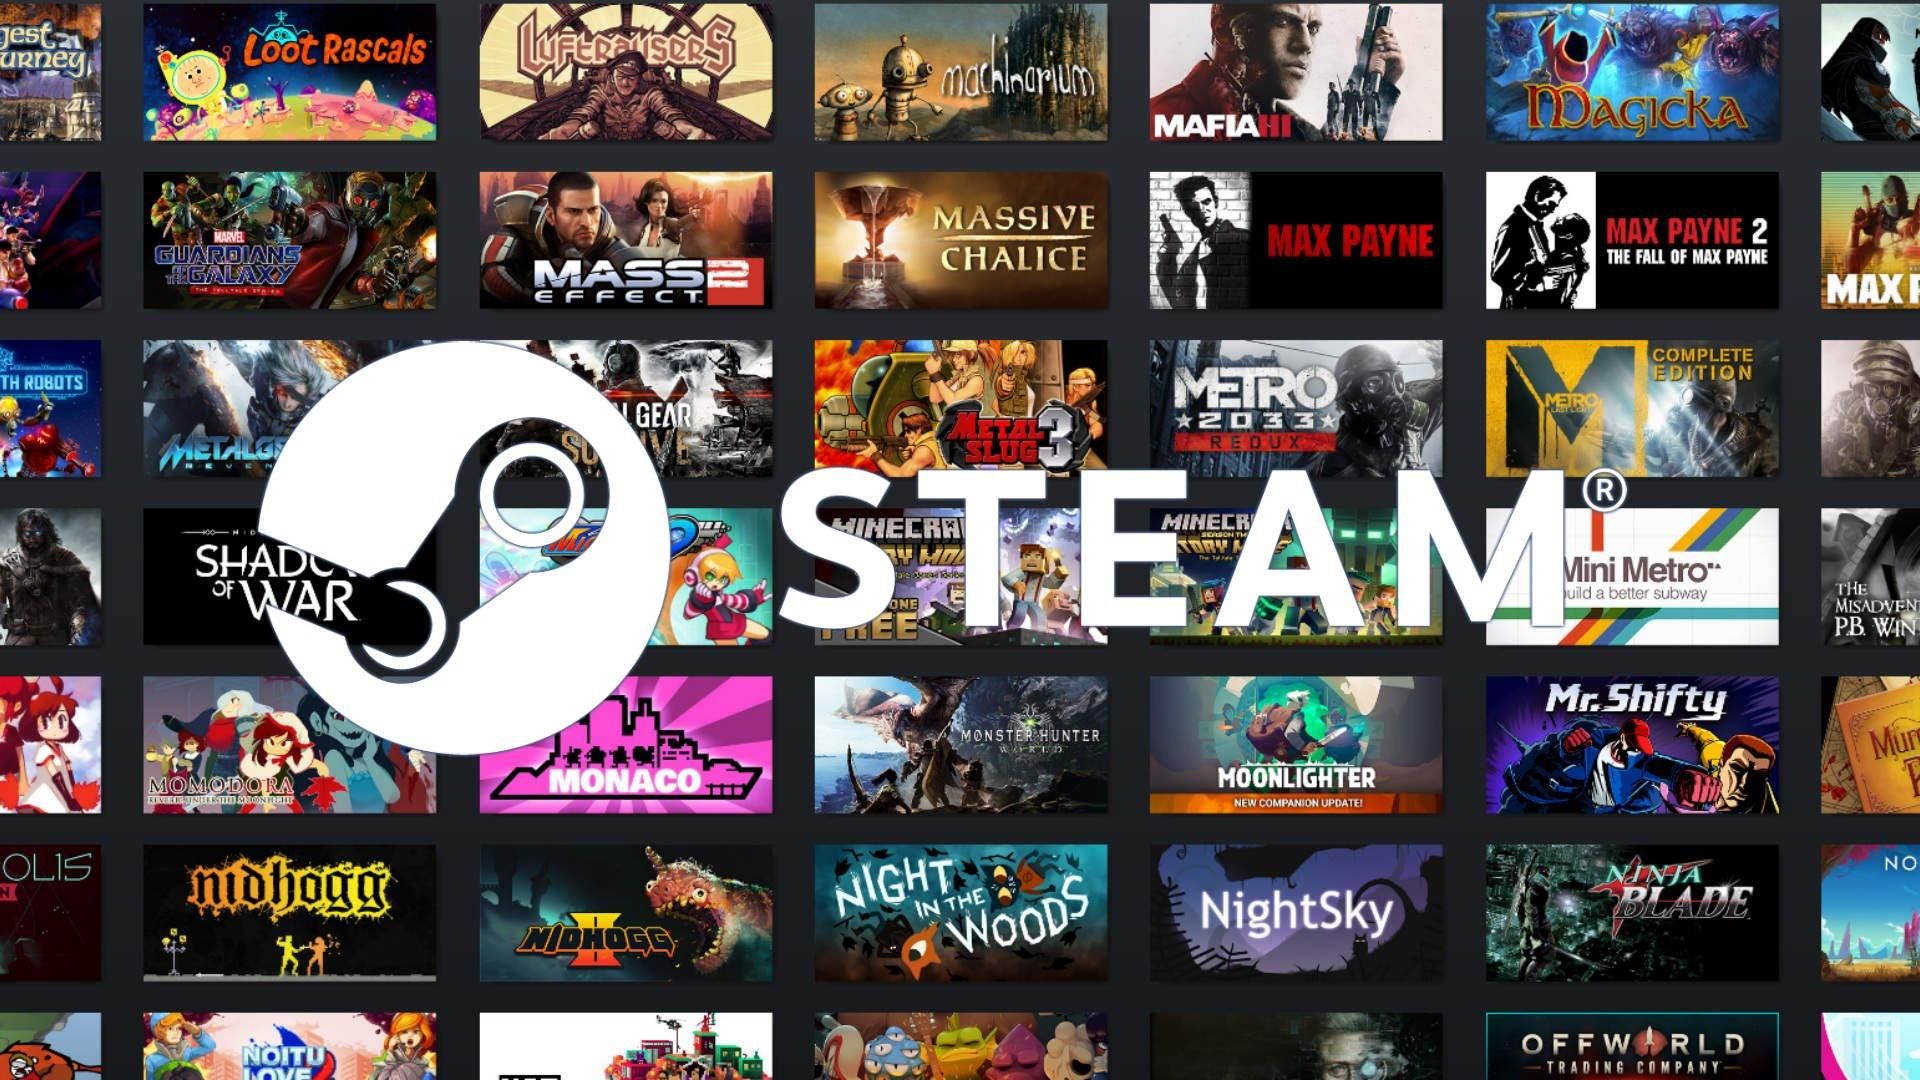 Điểm chung của những game bán chạy nhất trên Steam: có những từ như Manager, Tycoon, Remastered, HD